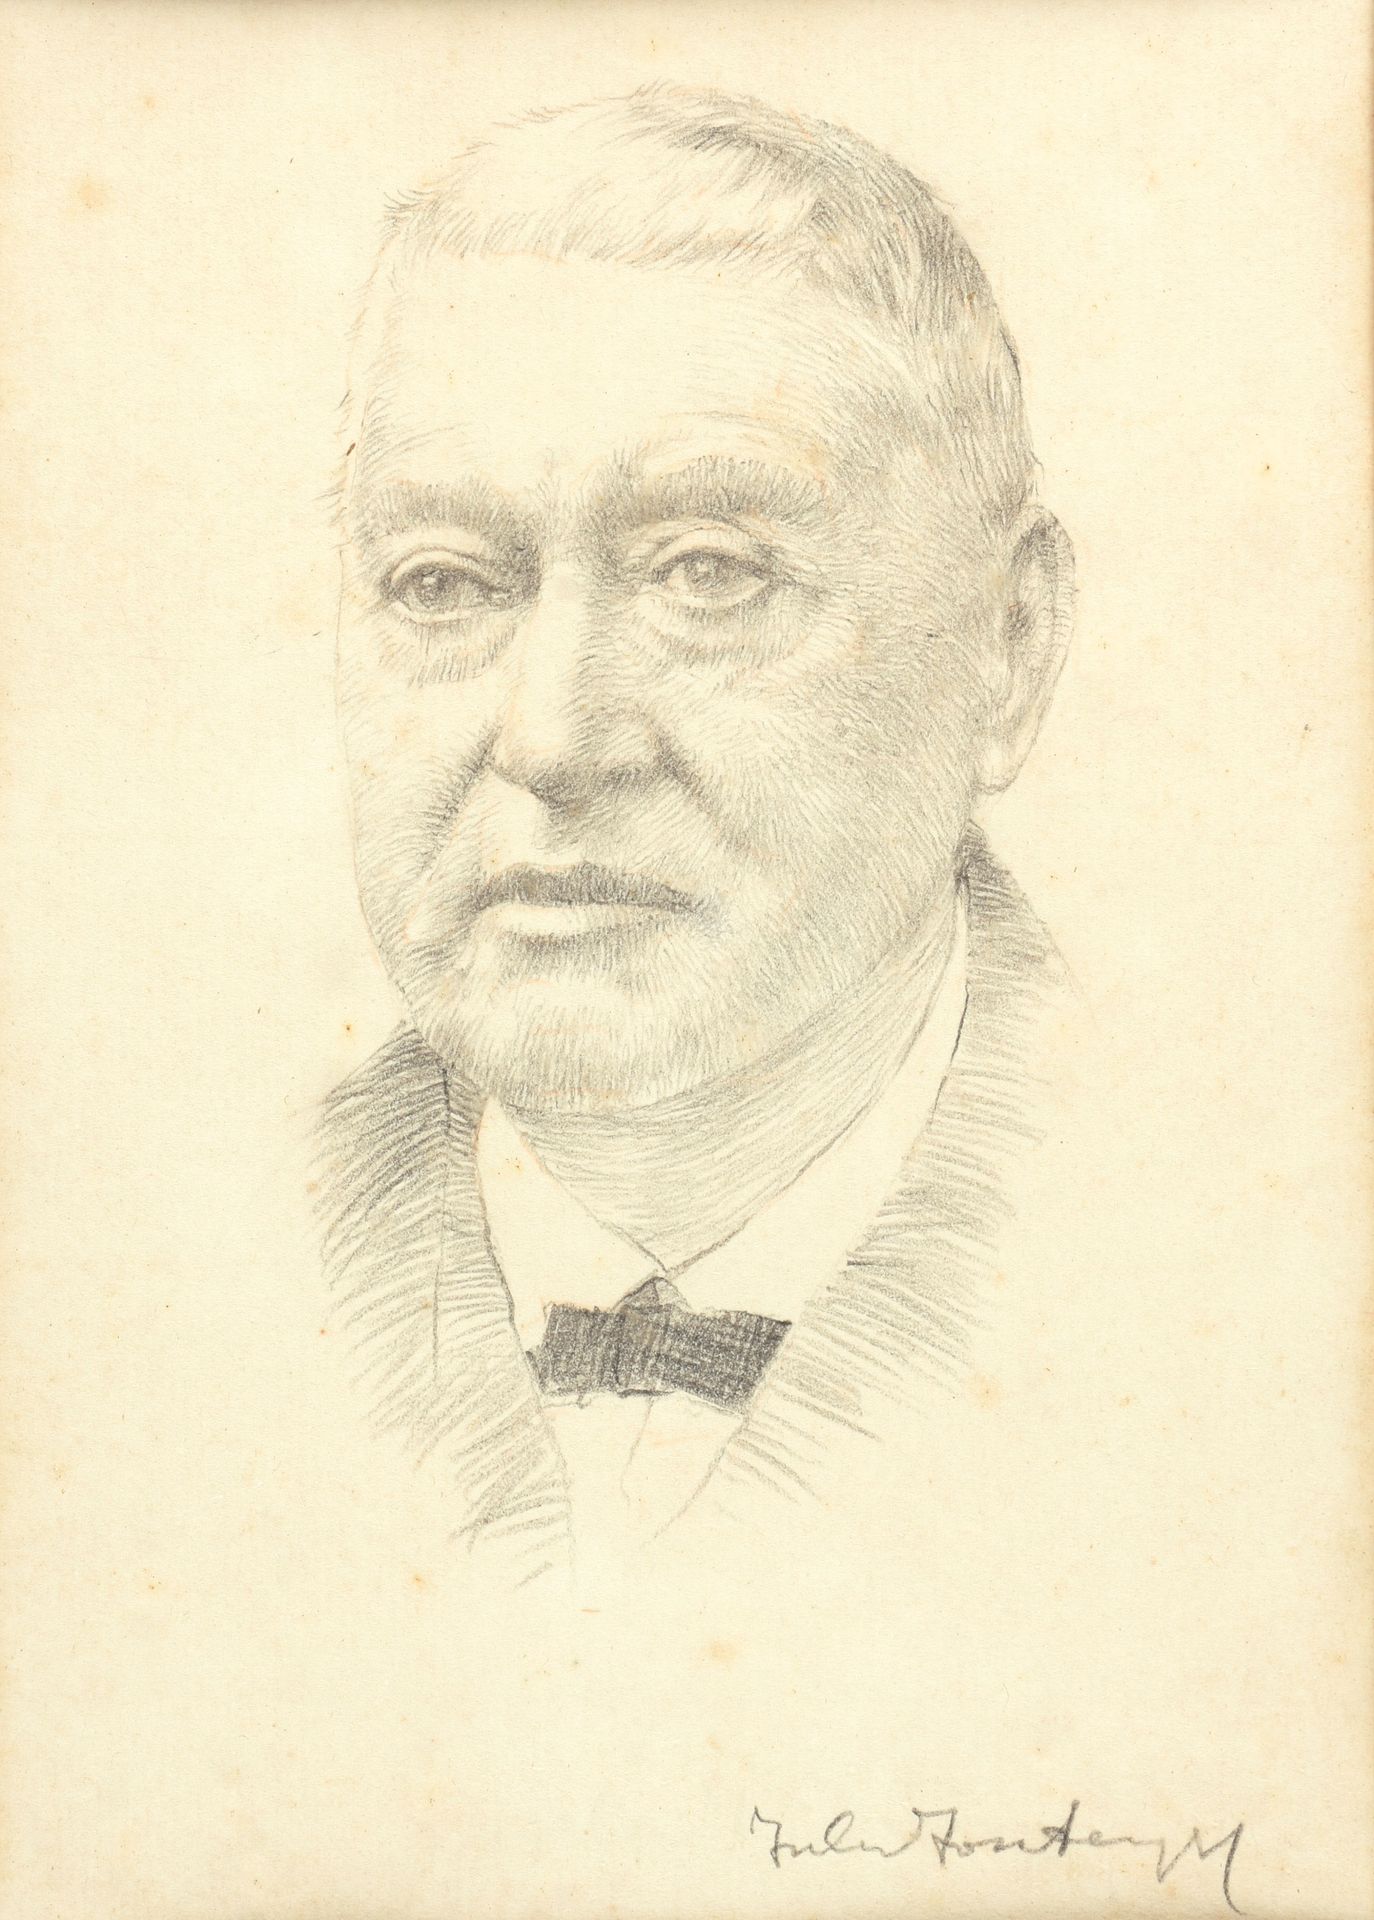 FONTEYNE, Jules (1878-1964) 一个男人的肖像

壶身(15.5 x 10.5 cm)在背面。报道的内容